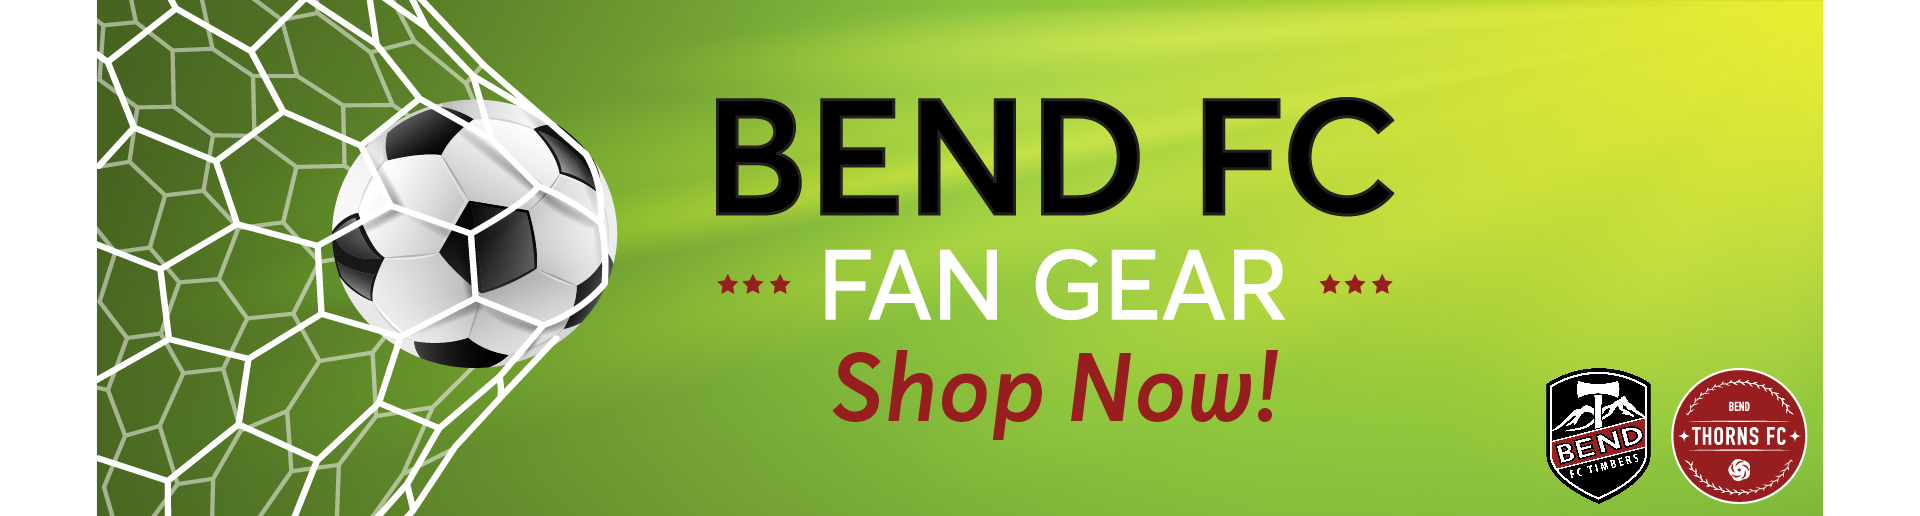 Bend FC Fan Gear